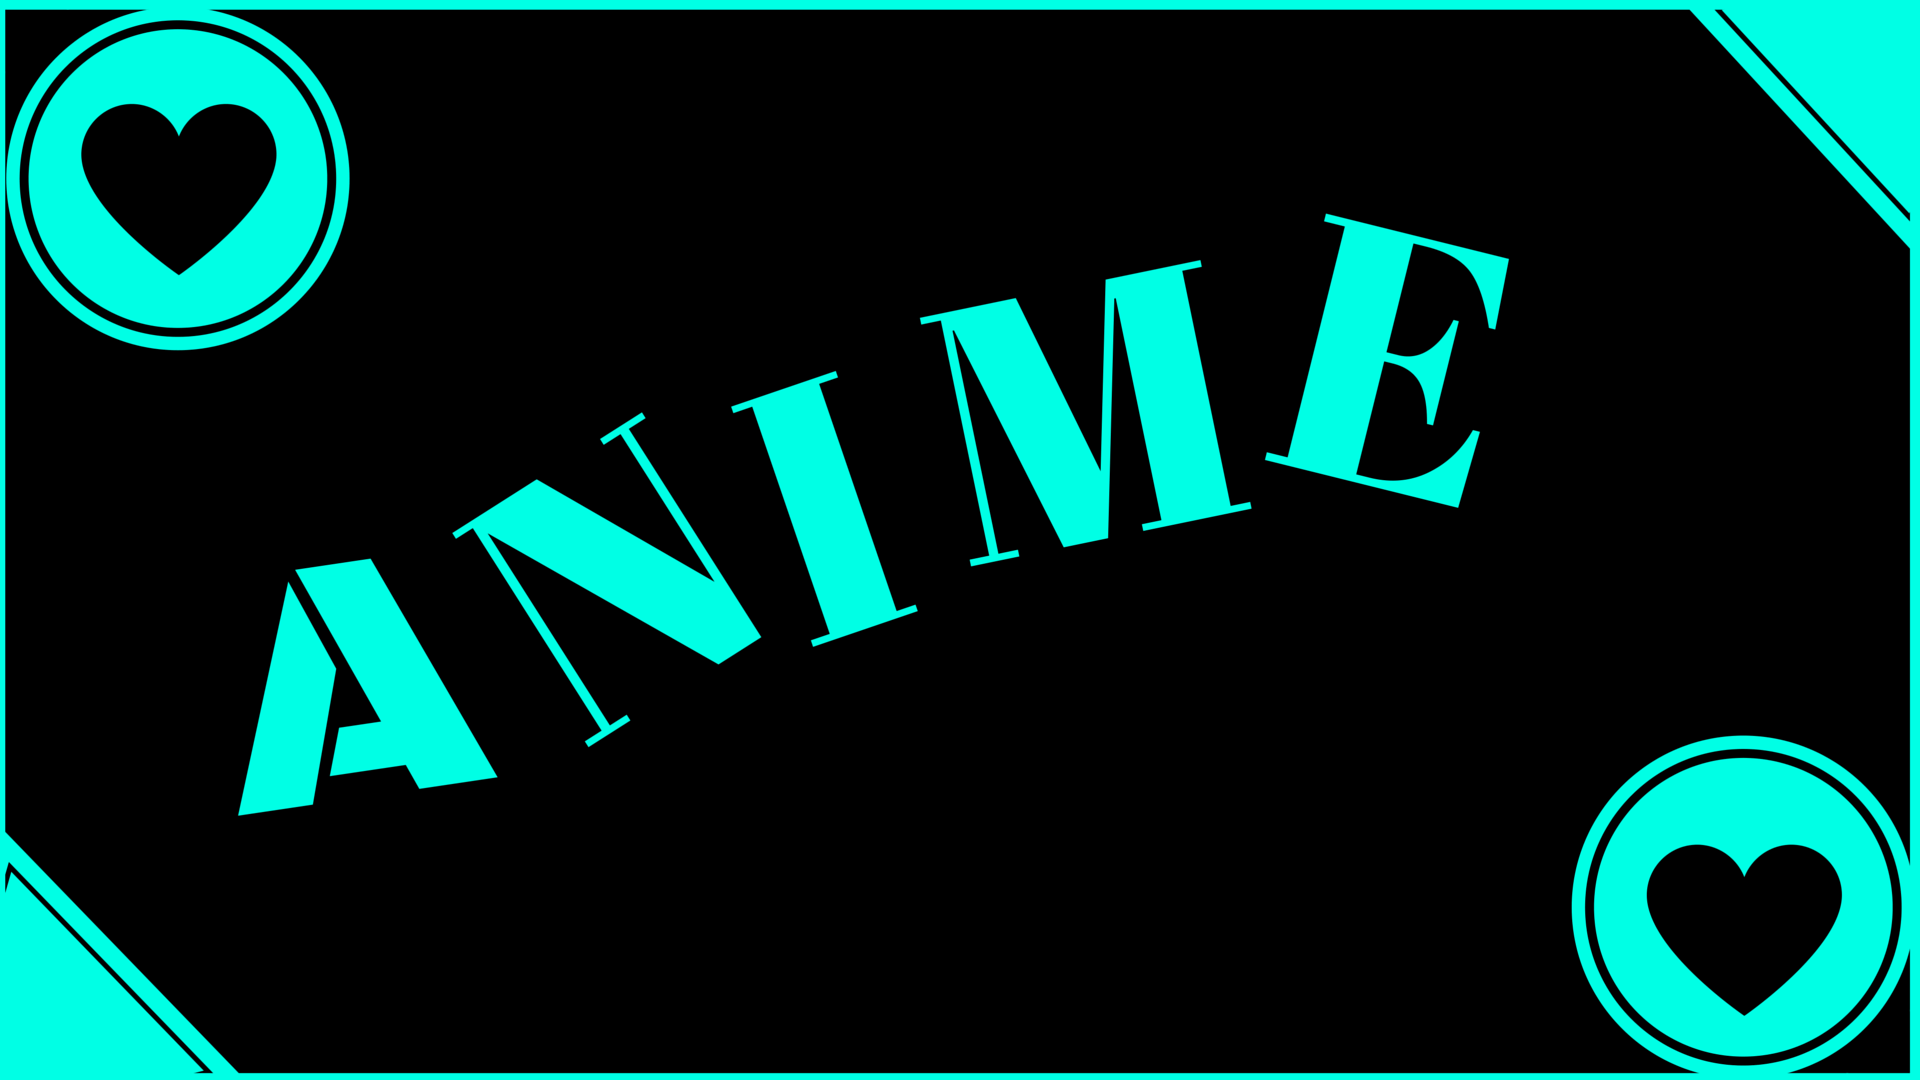 Anime Logos And Names